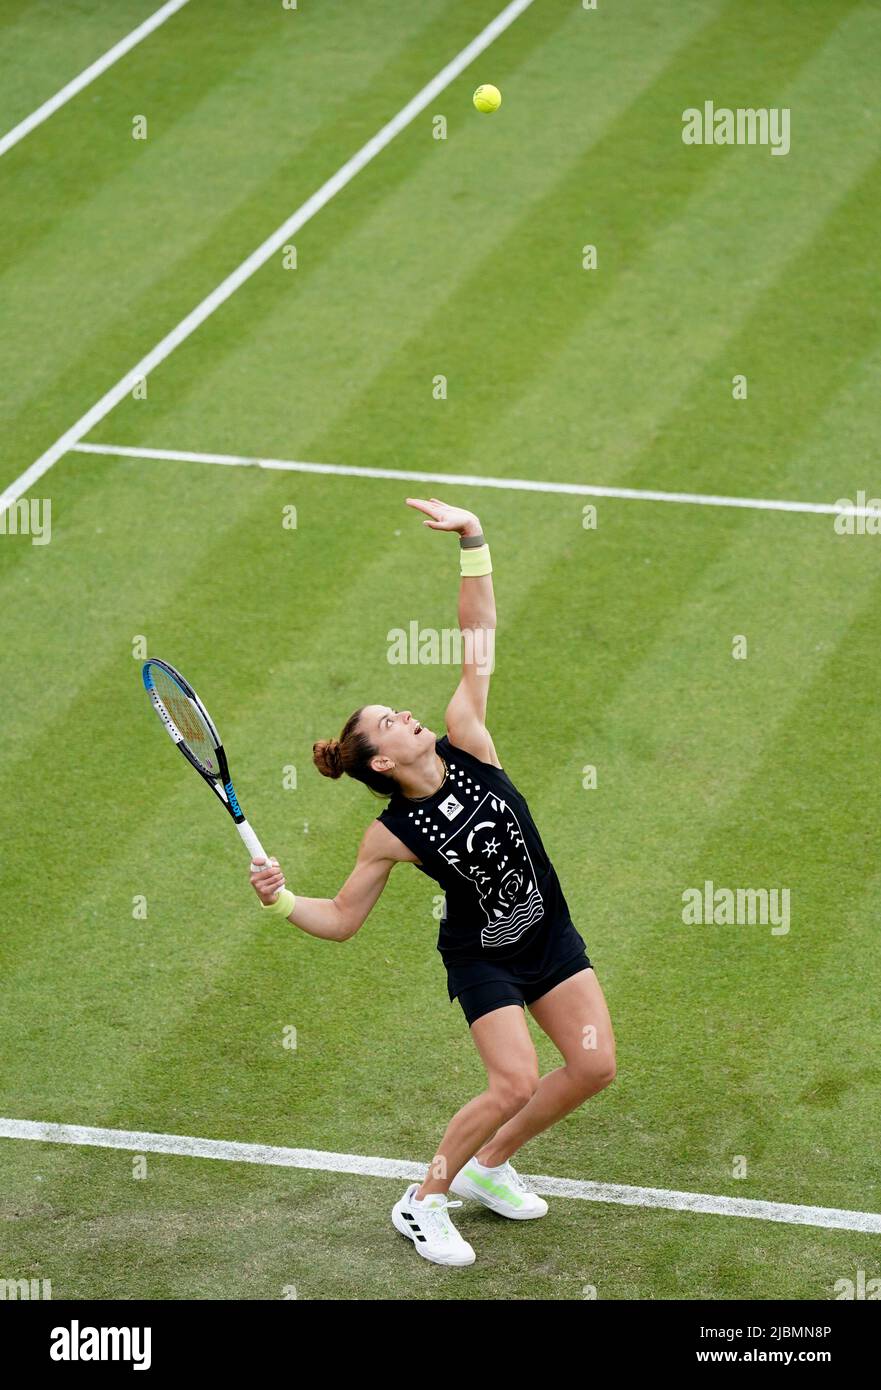 Die griechische Maria Sakkari dient während ihres Spiels gegen die kolumbianische Camila Osorio am vierten Tag der Rothesay Open 2022 im Nottingham Tennis Center, Nottingham. Bilddatum: Dienstag, 7. Juni 2022. Stockfoto